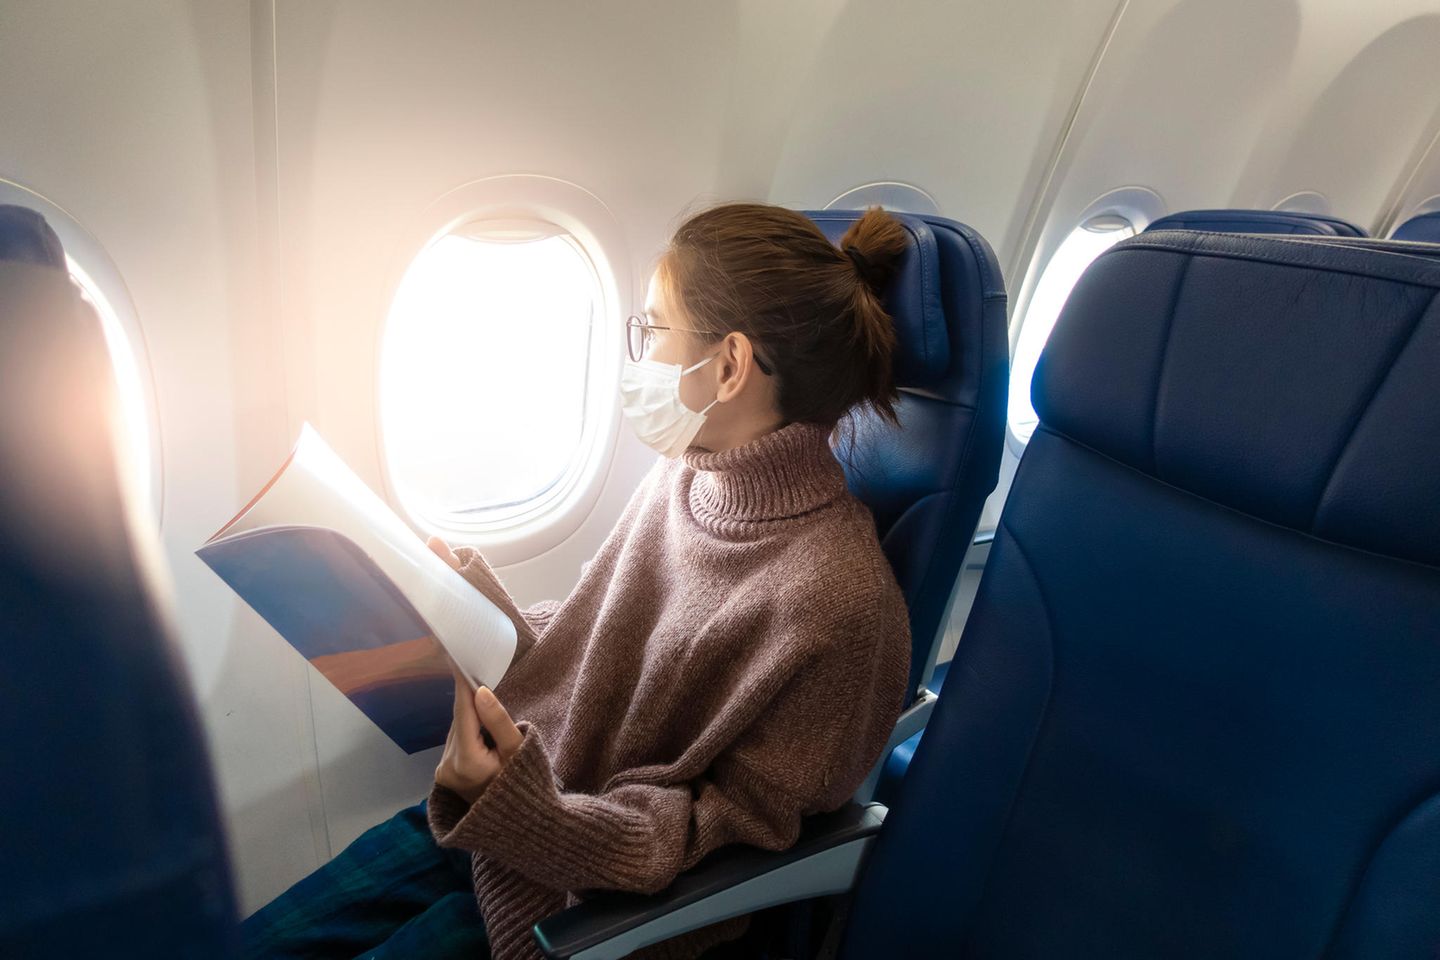 Wer mit dem Flugzeug in den Urlaub starten will, sollte am Flughafen genug Zeit einplanen - und sich auch zu Hause schon intensiv mit seiner Reise beschäftigen